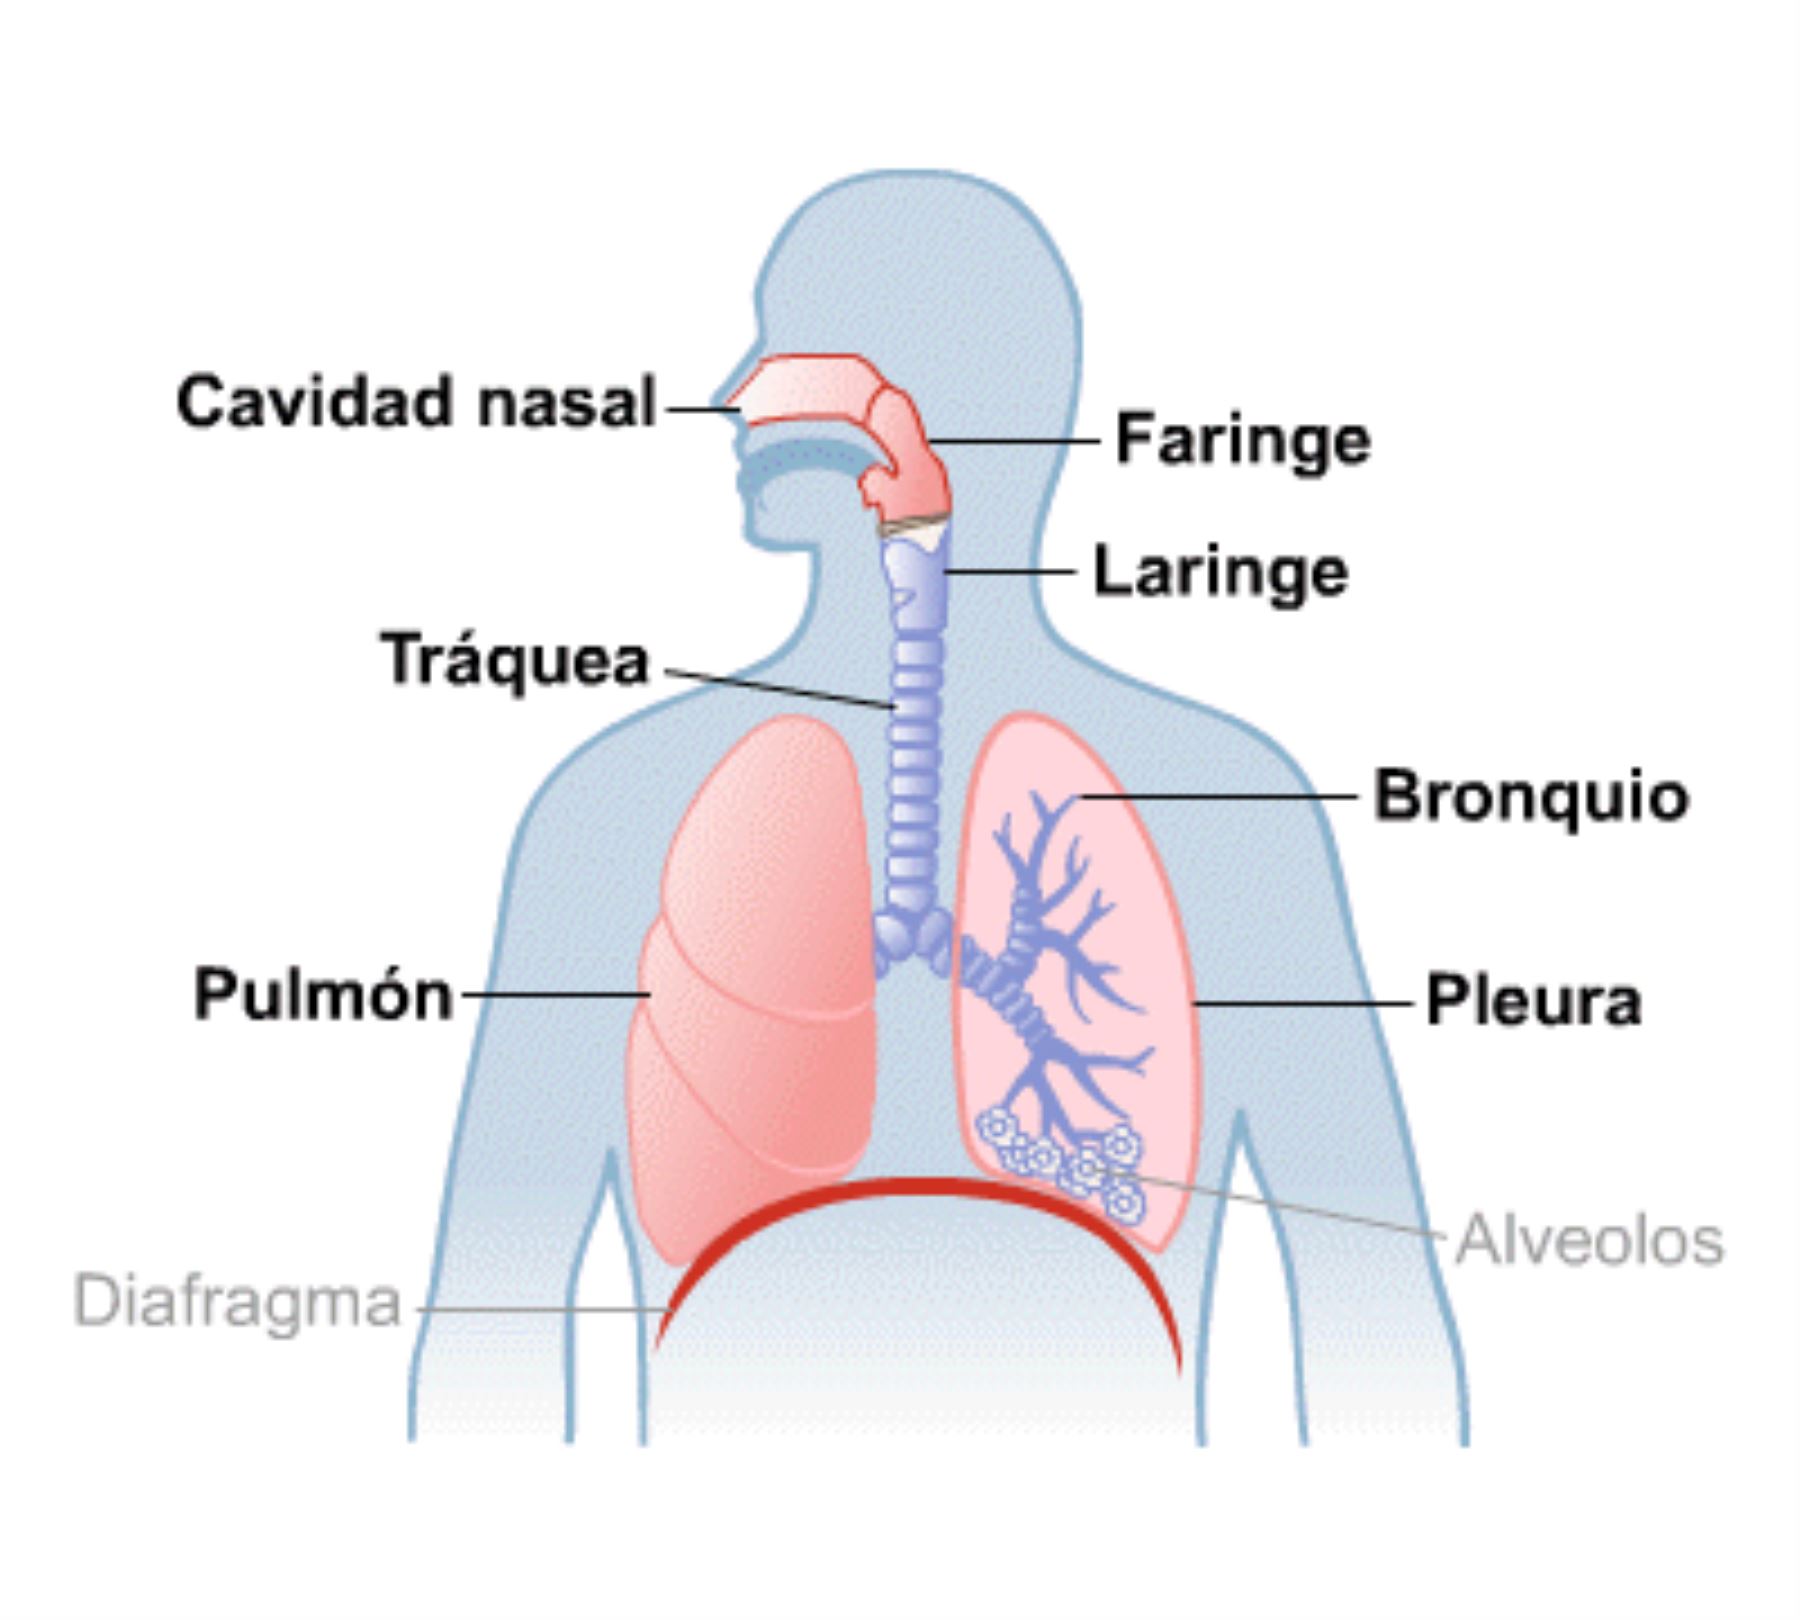 Ómicron: ¿qué parte de las vías respiratorias afecta más? [video]